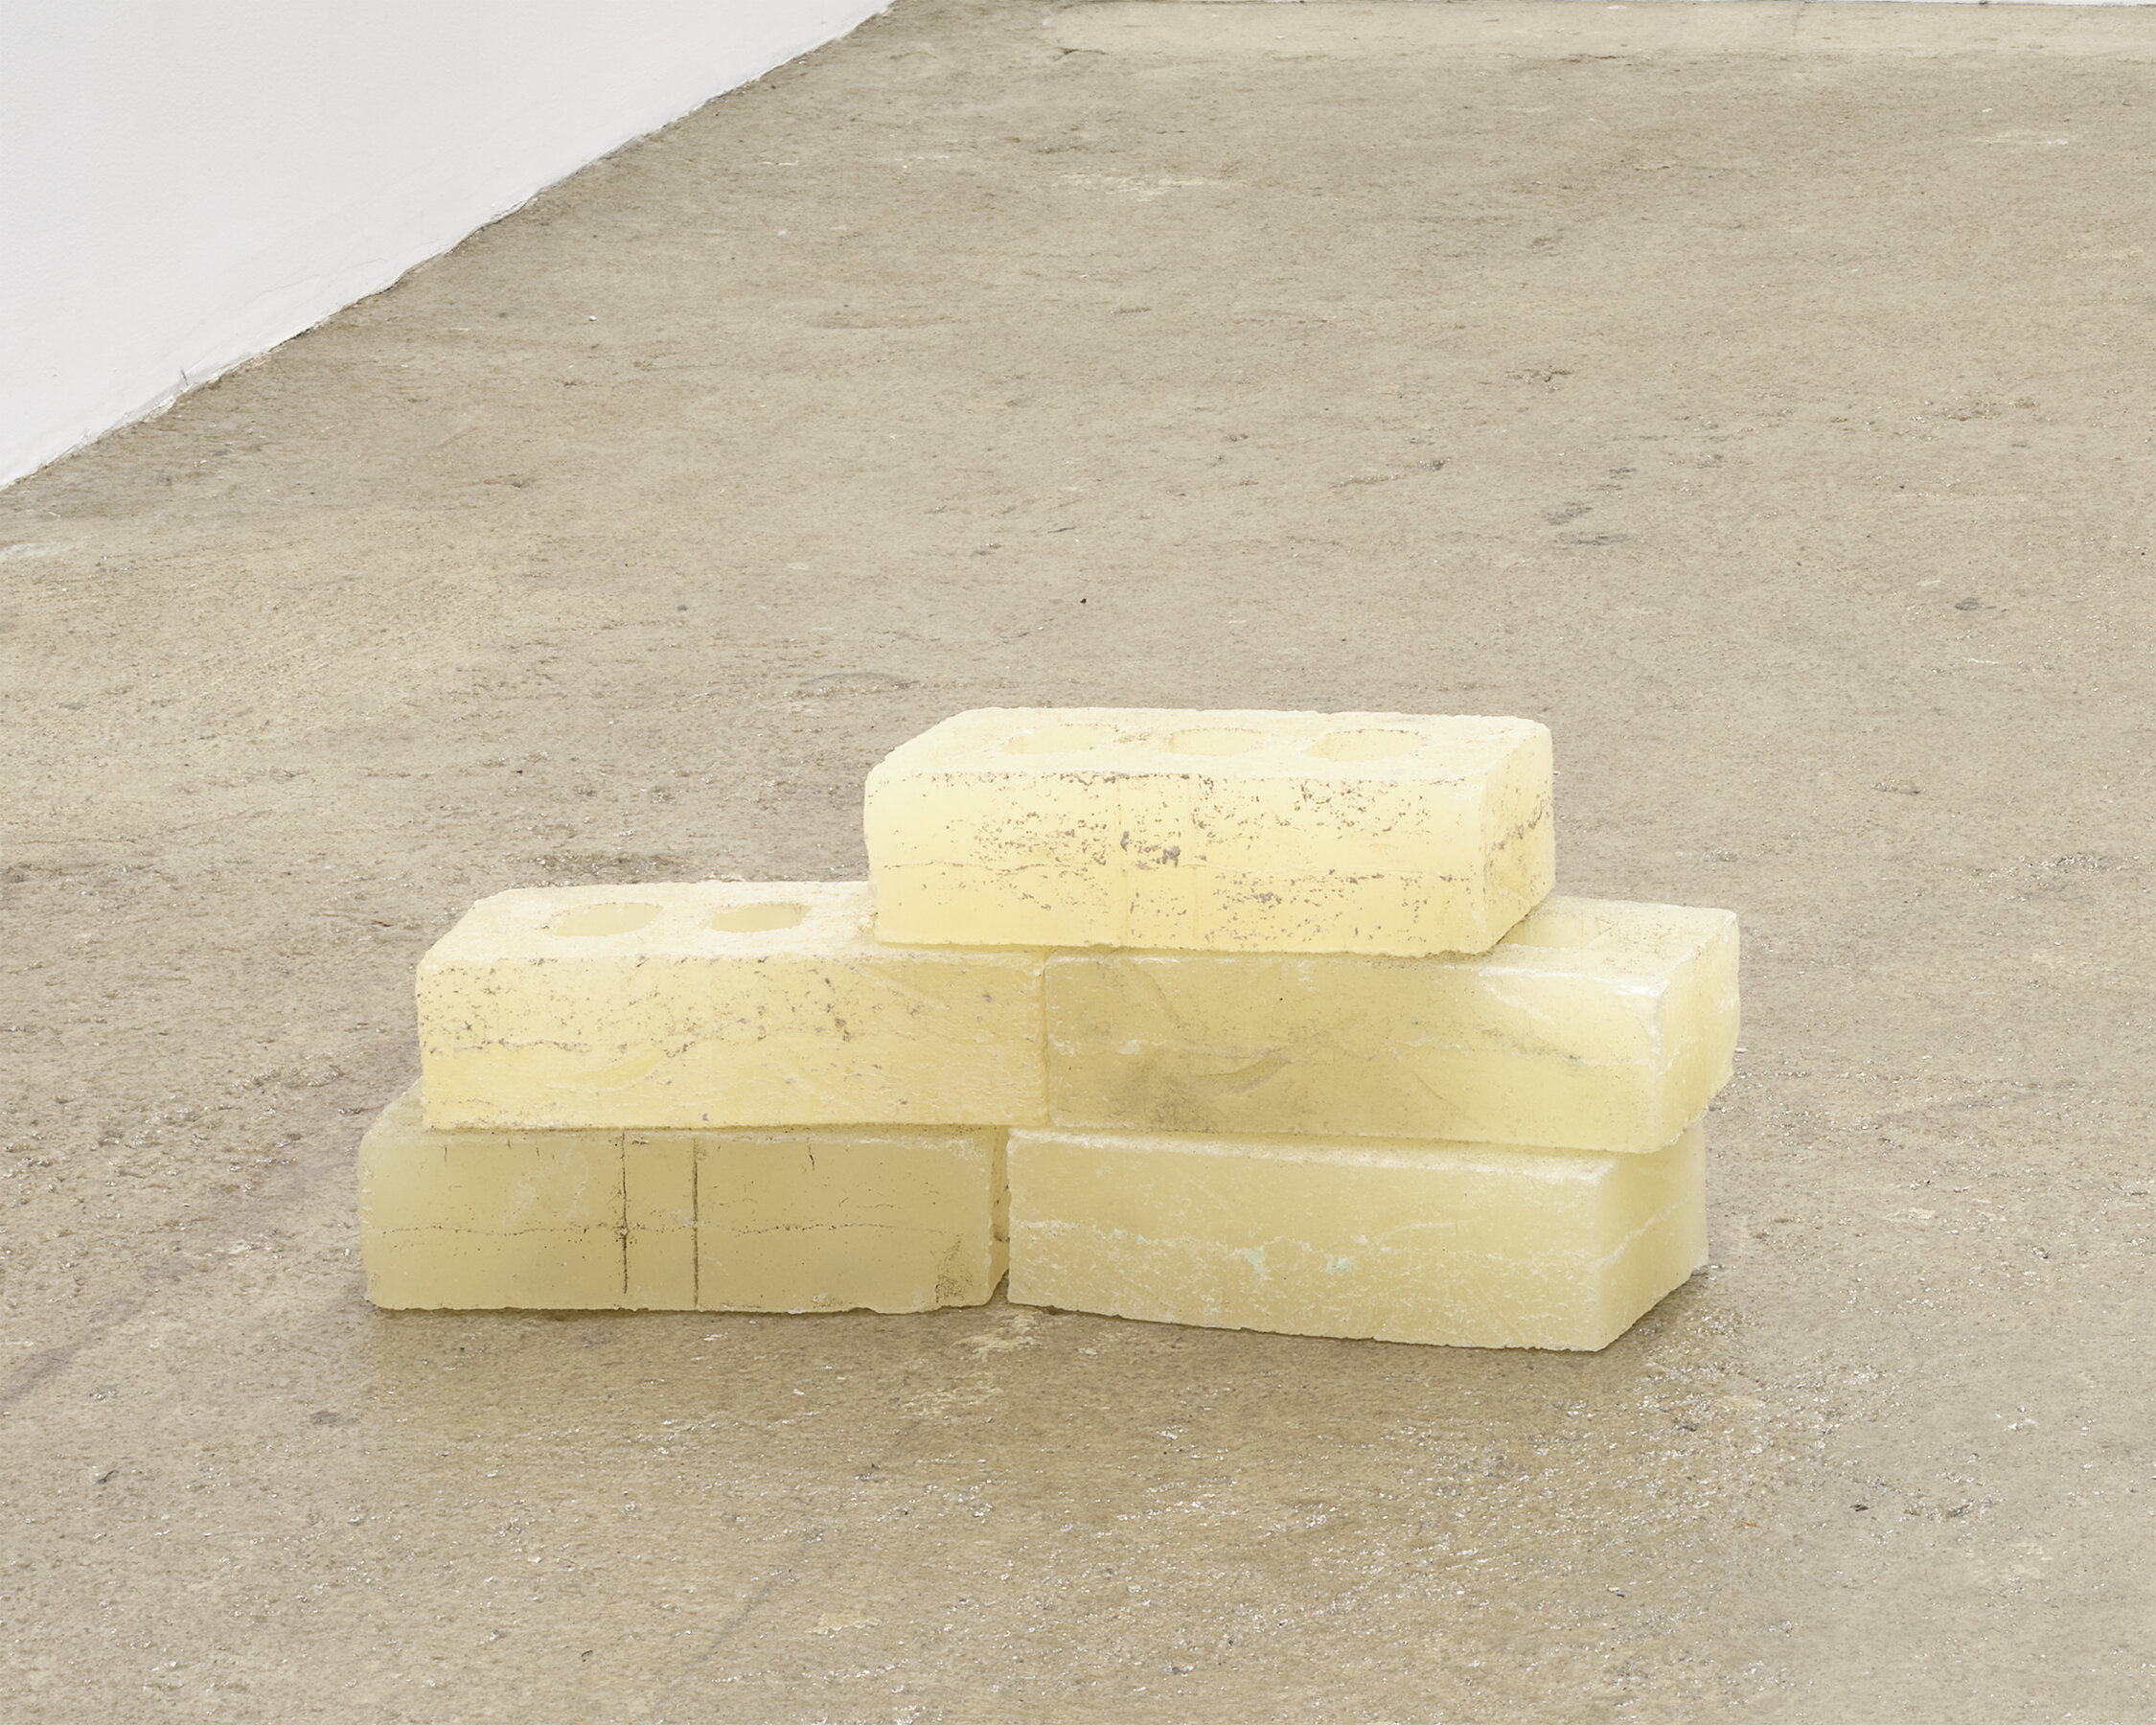  Sean Donovan  Bricks , 2021 cast urethane resin 2 1/4 x 3 3/4 x 8 inches (6 x 10 x 20 cm) each SD57 